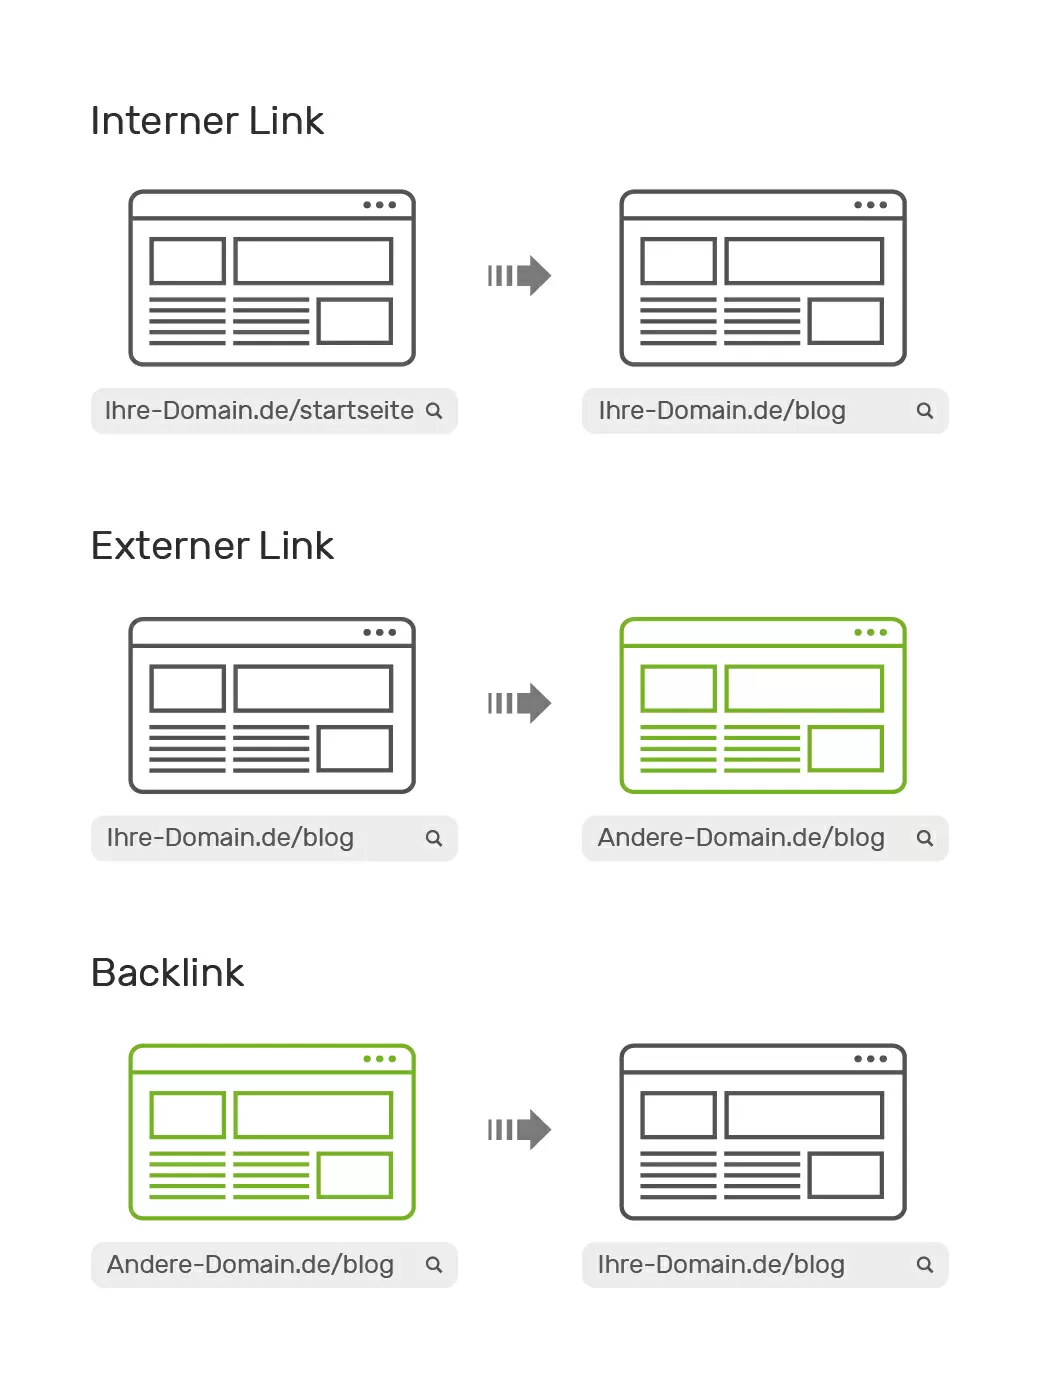 Grafik zur Darstellung der Unterschiede von internen Link, externen Links und Backlinks